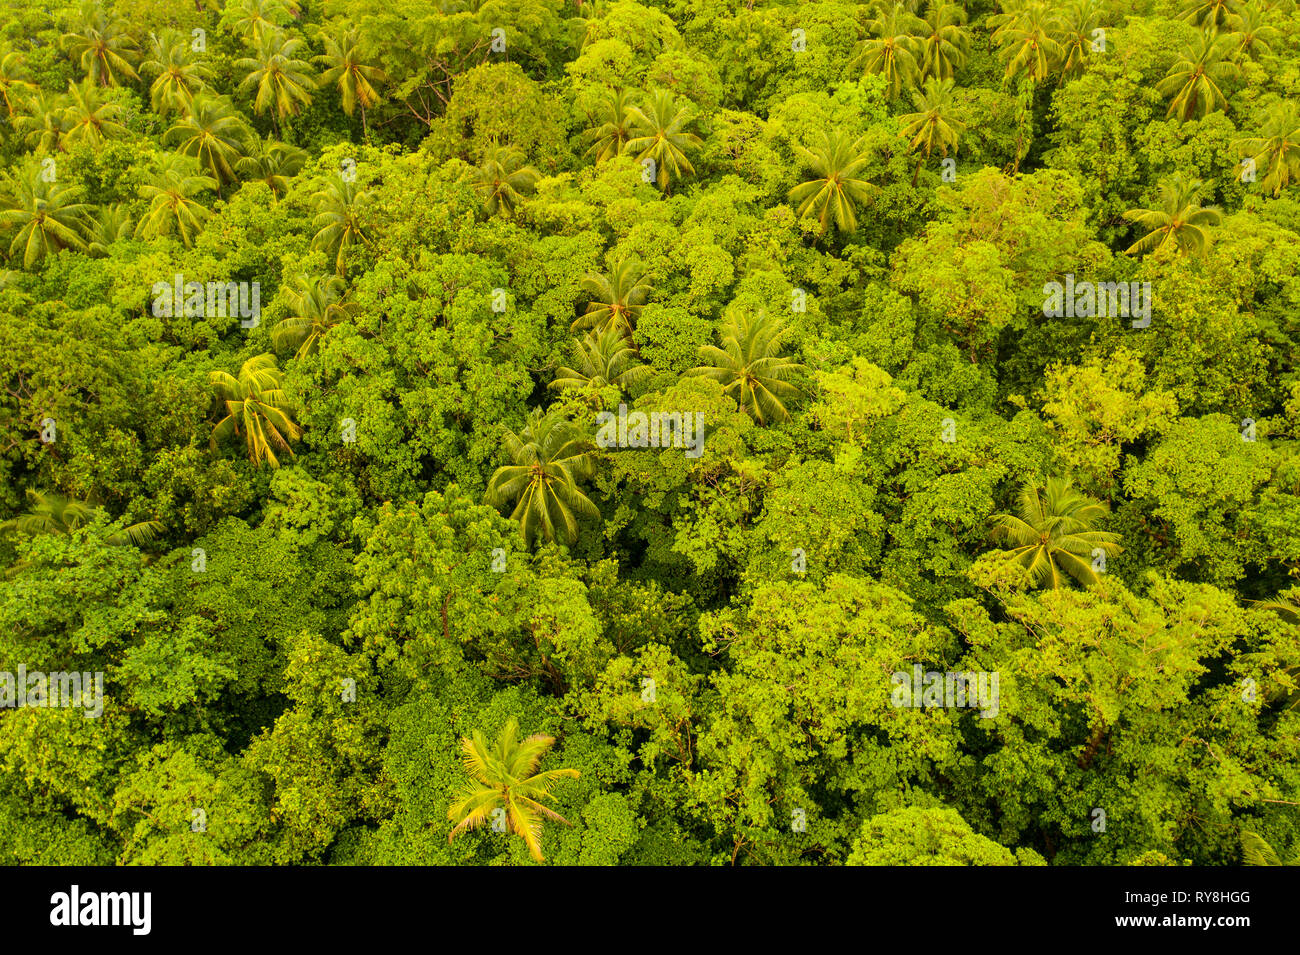 Vista aerea della lussureggiante foresta pluviale in Papua Nuova Guinea. Questa regione porti straordinaria biodiversità. Foto Stock